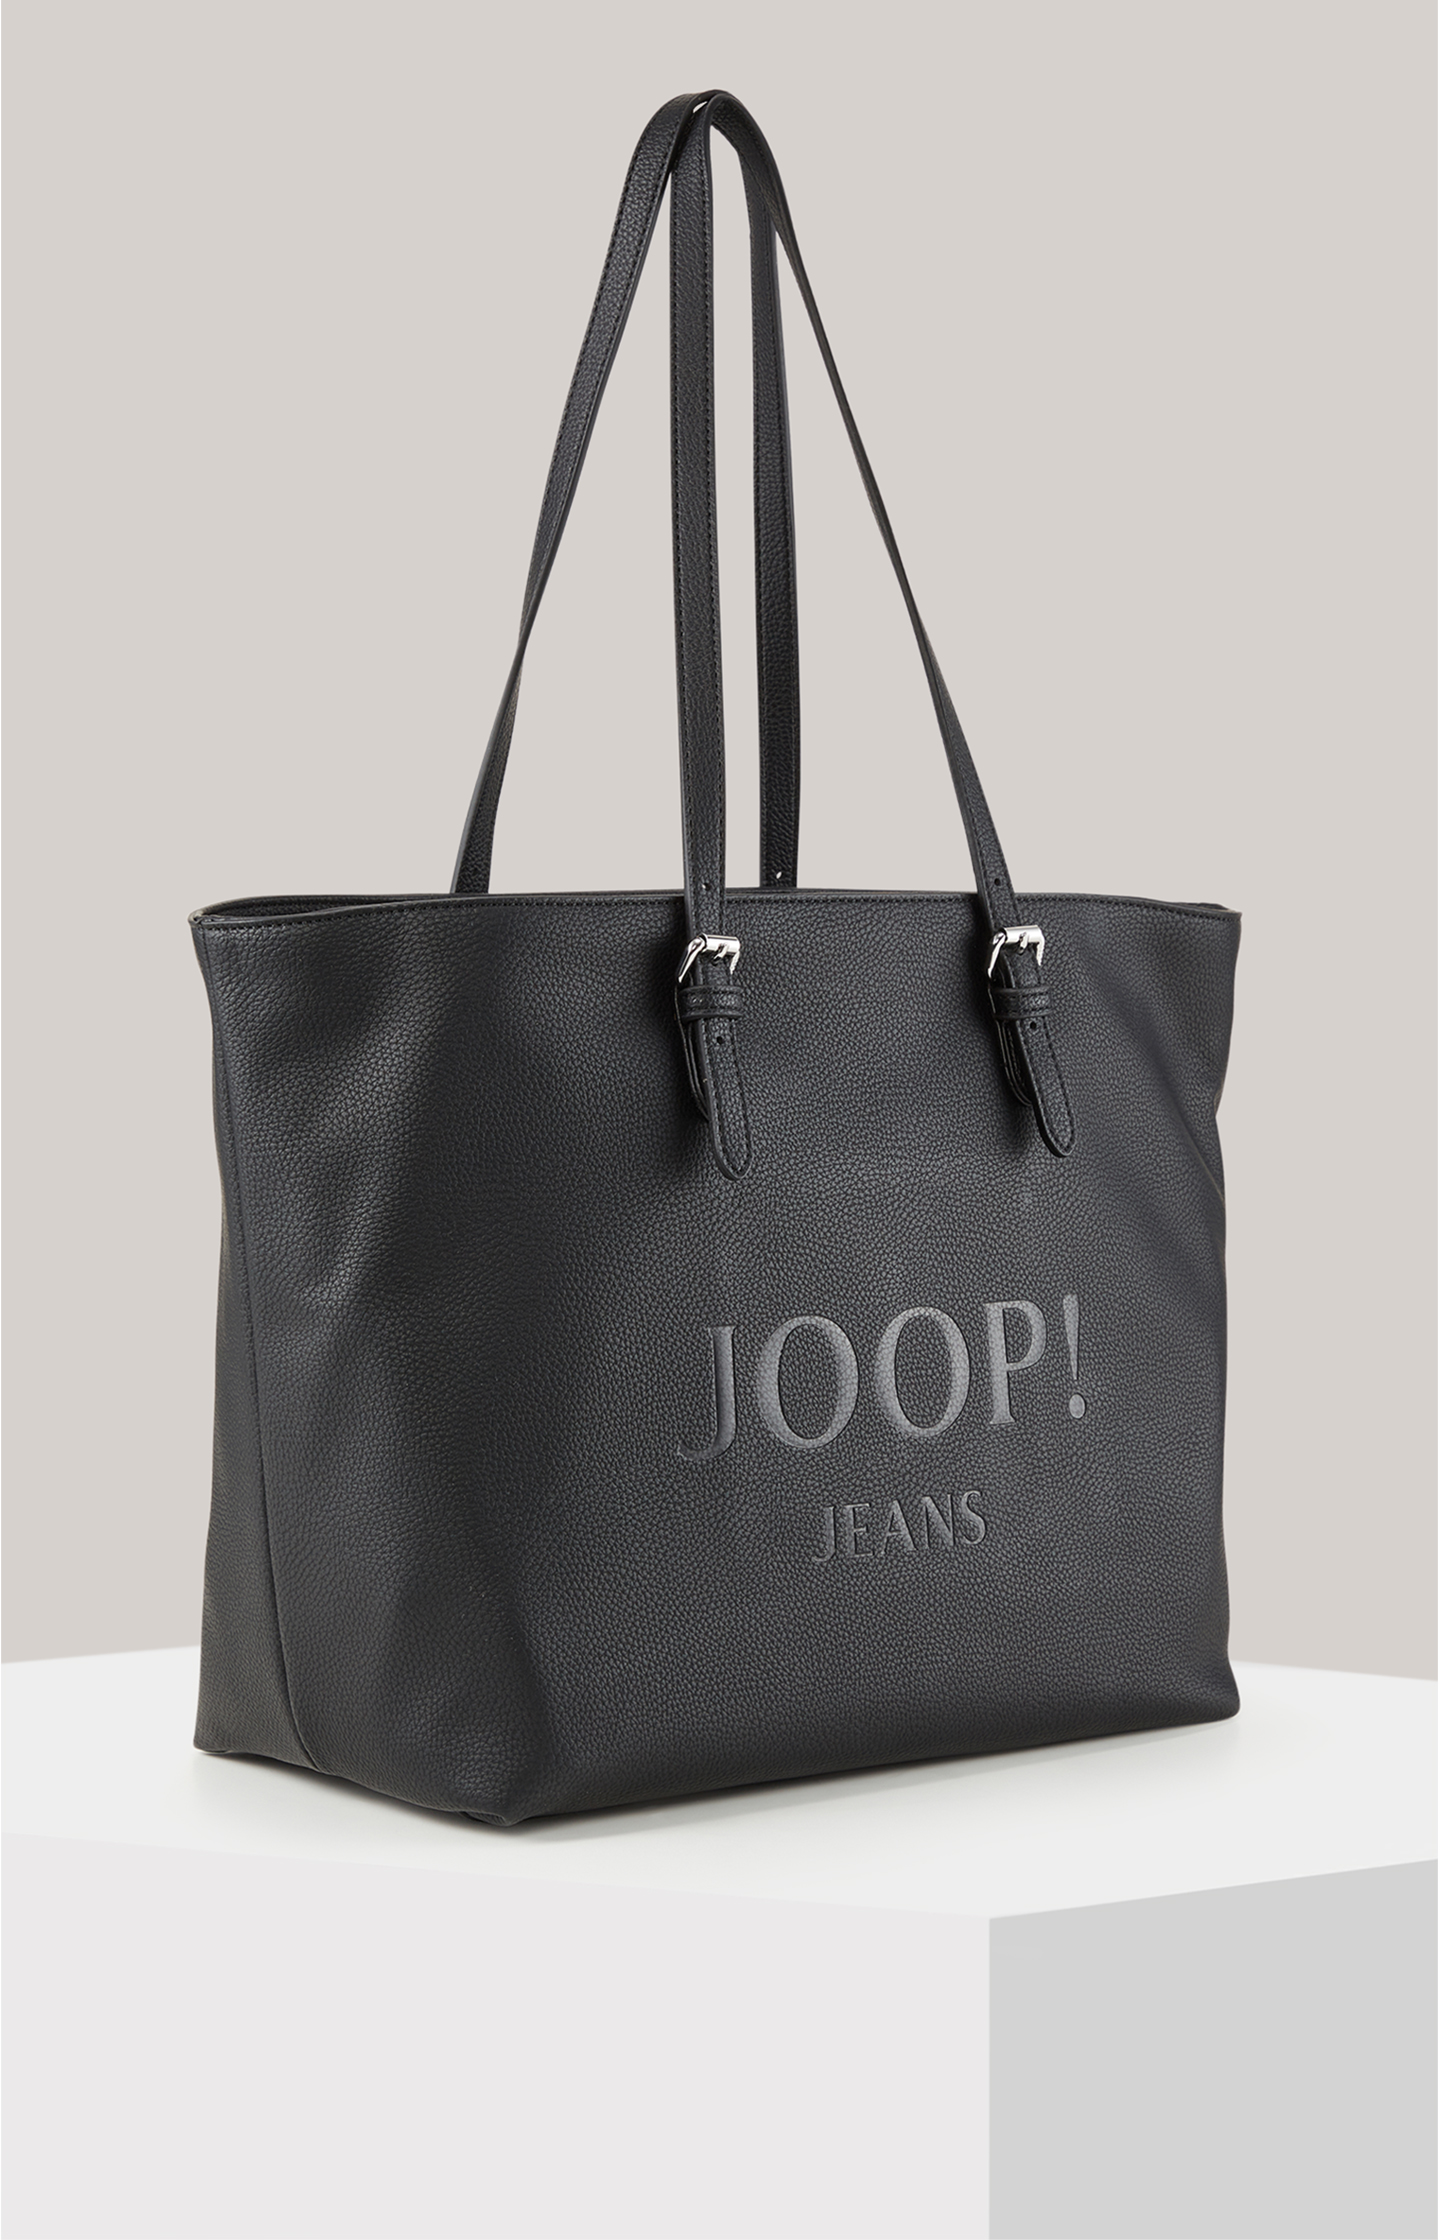 JOOP! Lara Online in Shopper Black Shop Lettera the in -